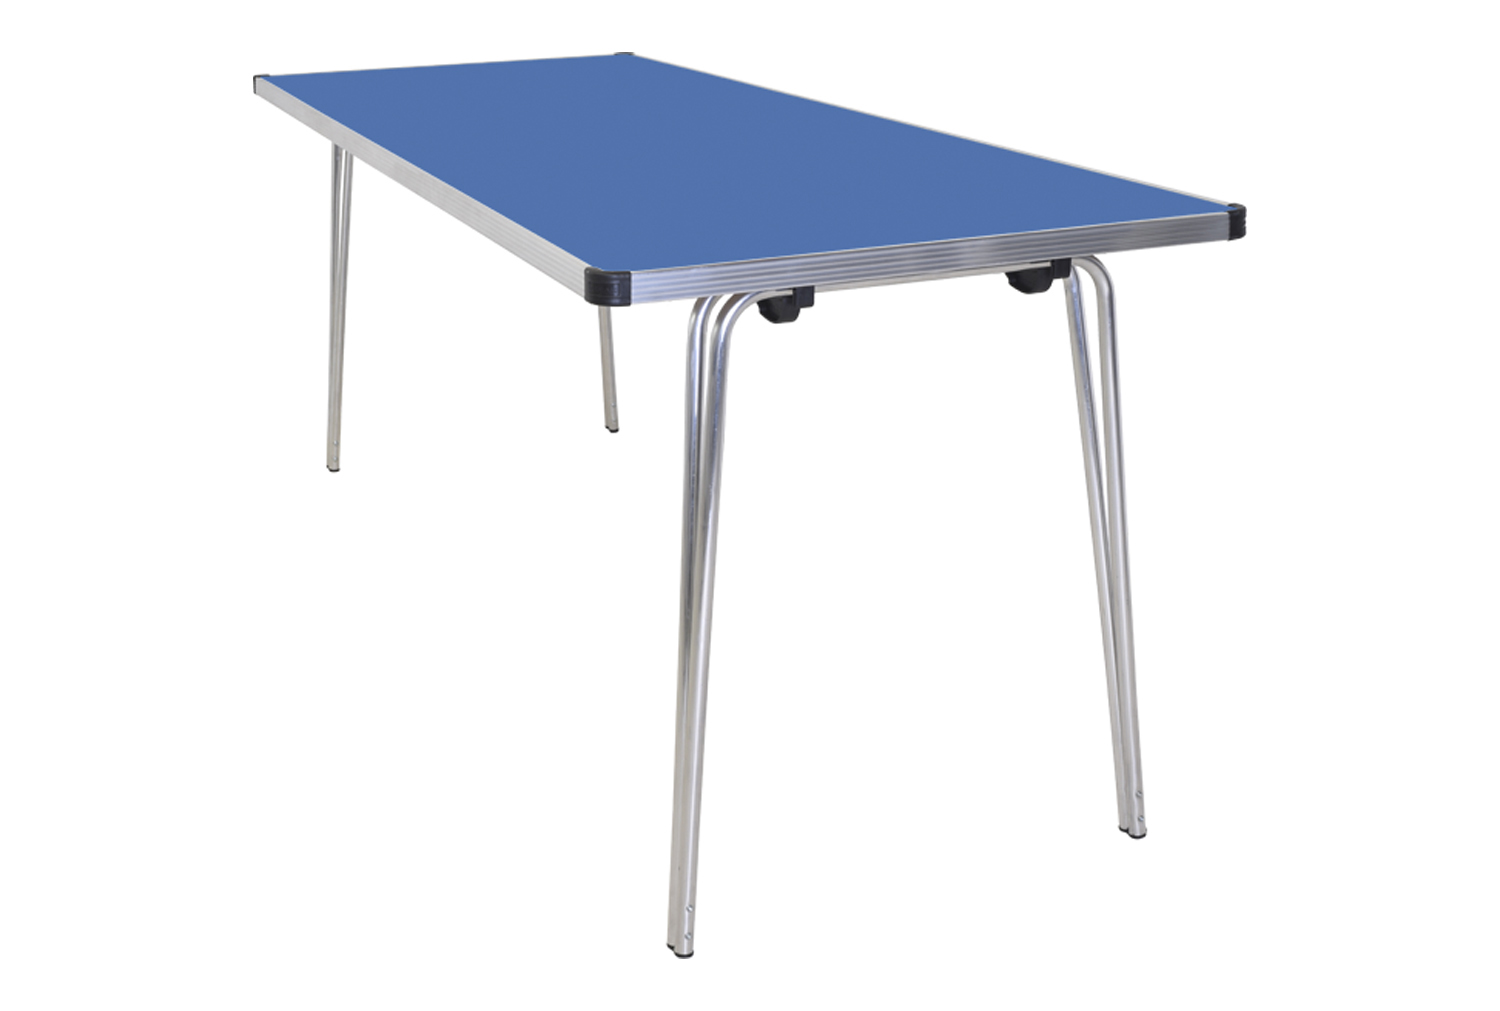 Gopak Contour Folding Table, 183wx69dx51h (cm), Blue